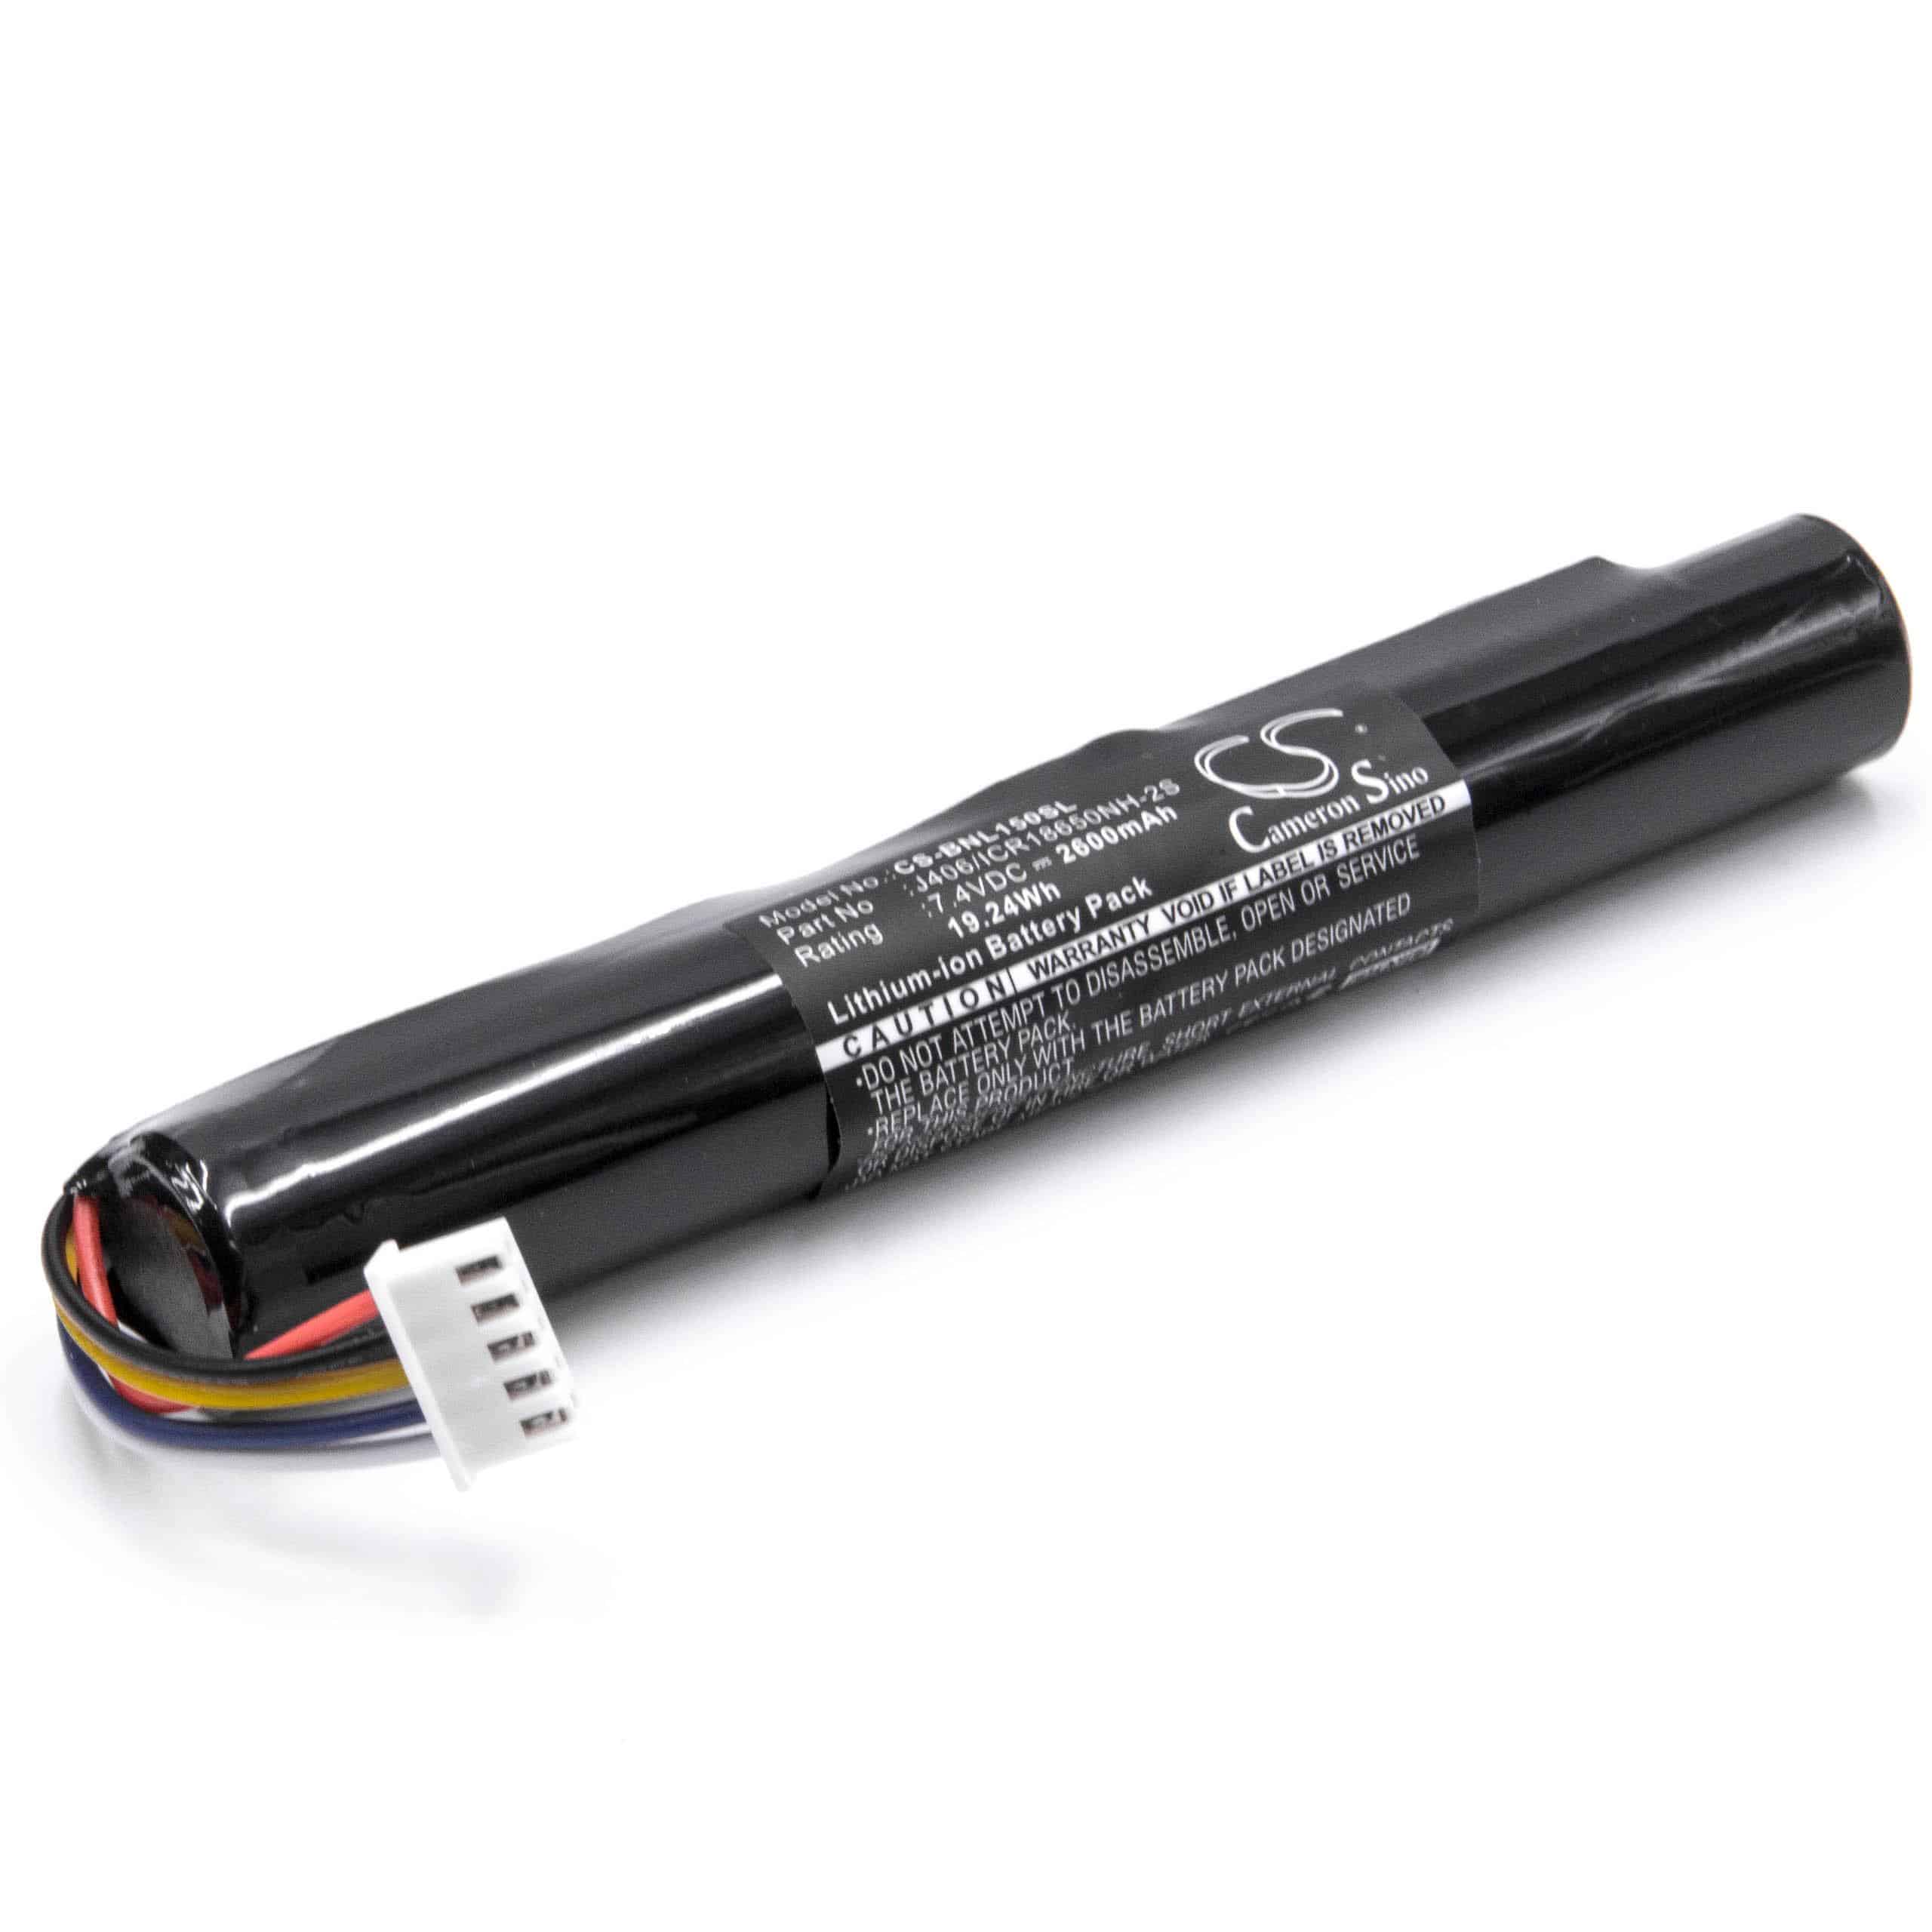 Batería reemplaza Bang & Olufsen J406/ICR18650NH-2S para altavoces Bang & Olufsen - 2600 mAh 7,4 V Li-Ion